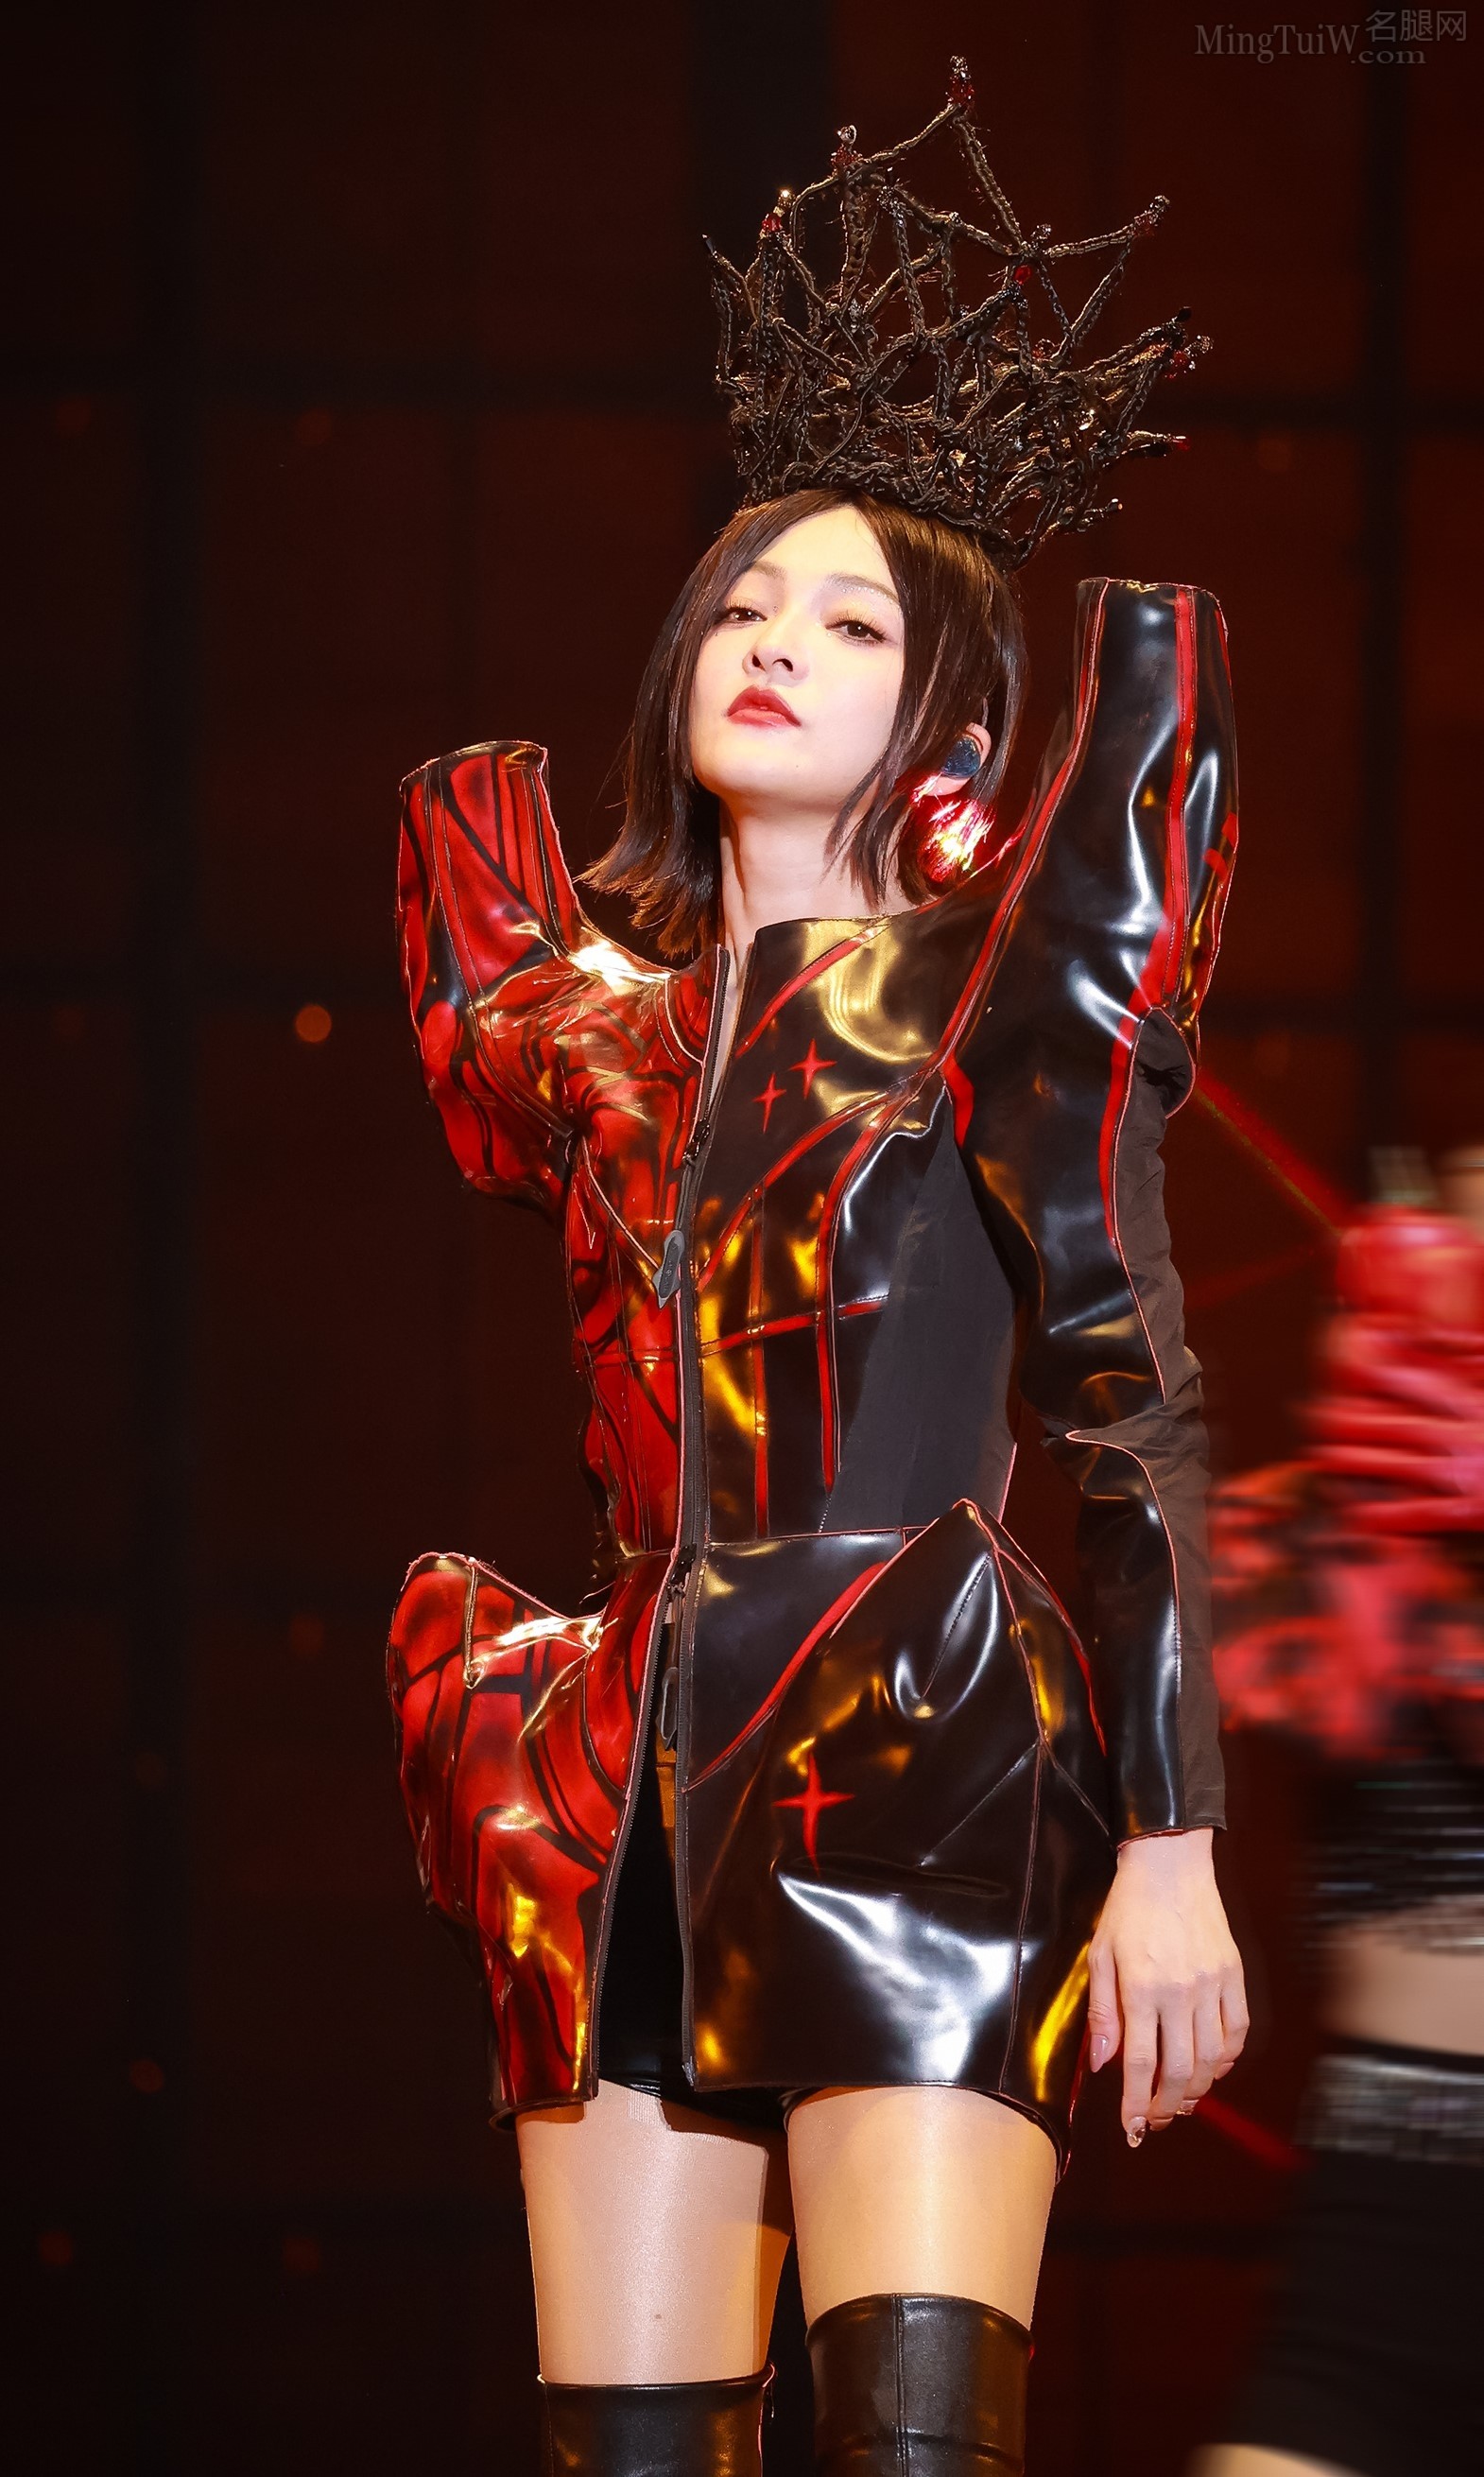 张韶涵在演唱会上穿清新花裙亮出肉丝腿（10/39） - 图片 - 名腿网